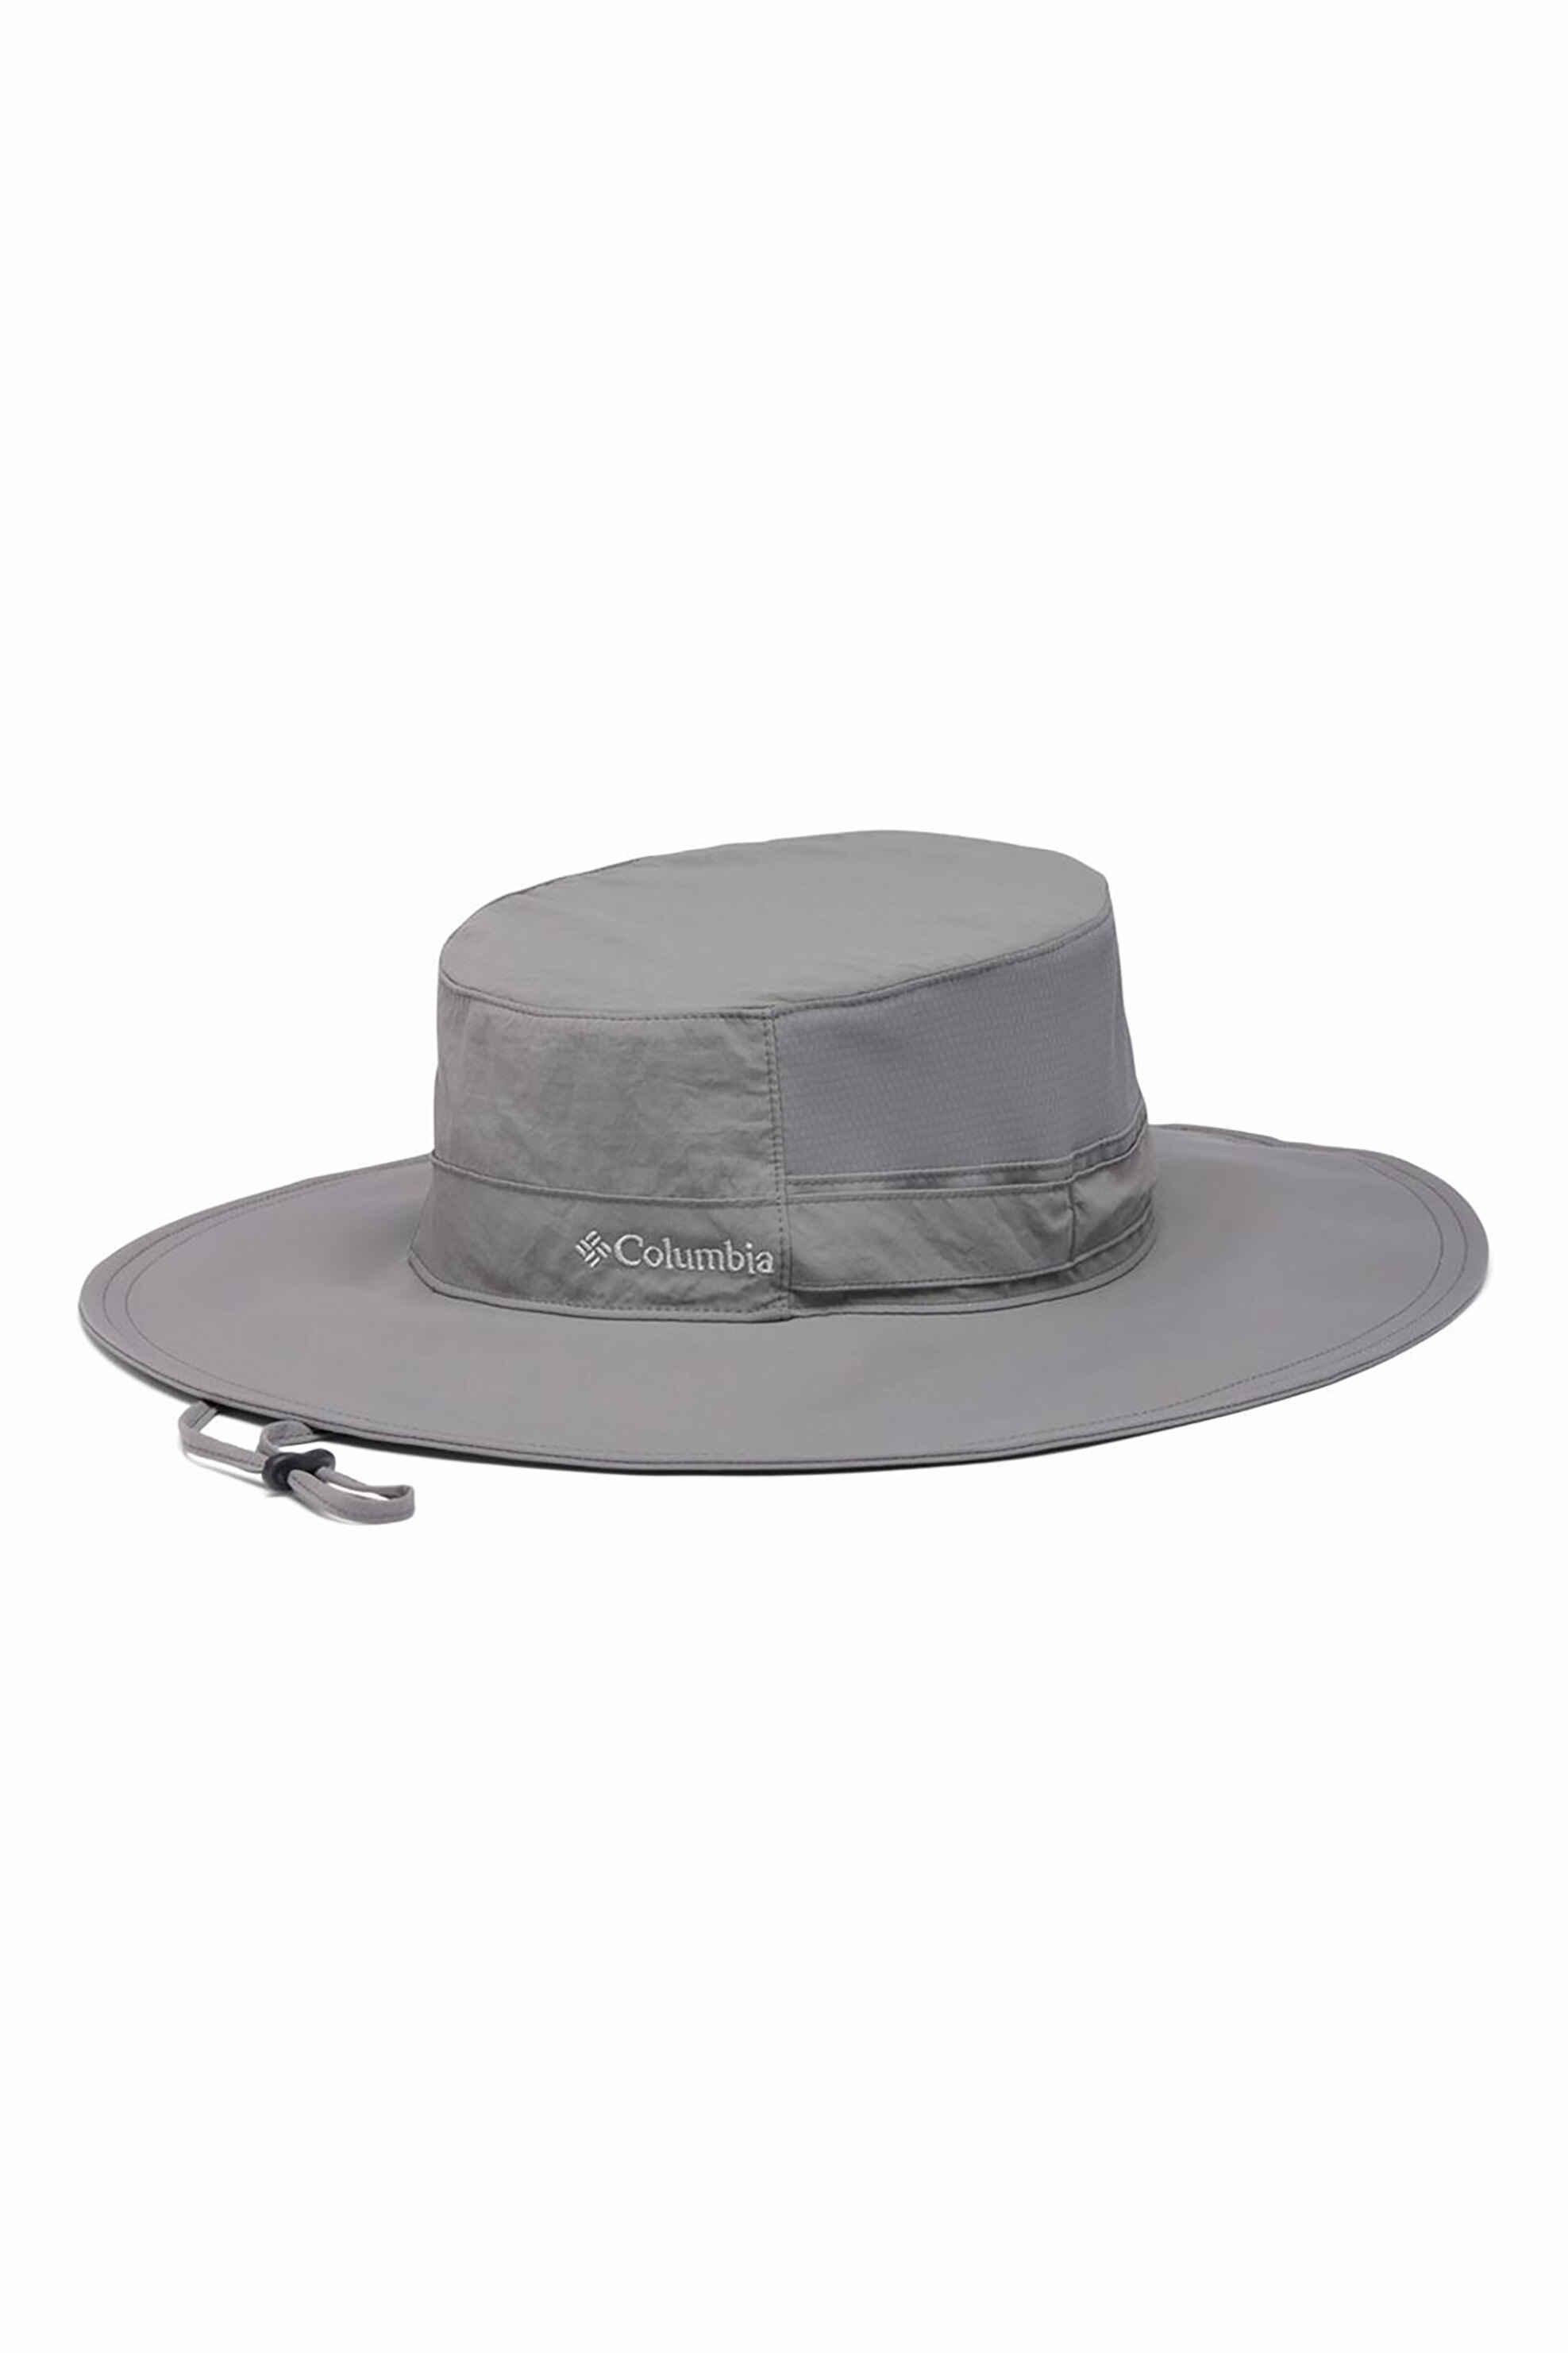 Ανδρική Μόδα > Ανδρικά Αξεσουάρ > Ανδρικά Καπέλα & Σκούφοι Columbia unisex καπέλο μονόχρωμο με κεντημένο λογότυπο "Coolhead II Zero" - 2101061023TEM Γκρι